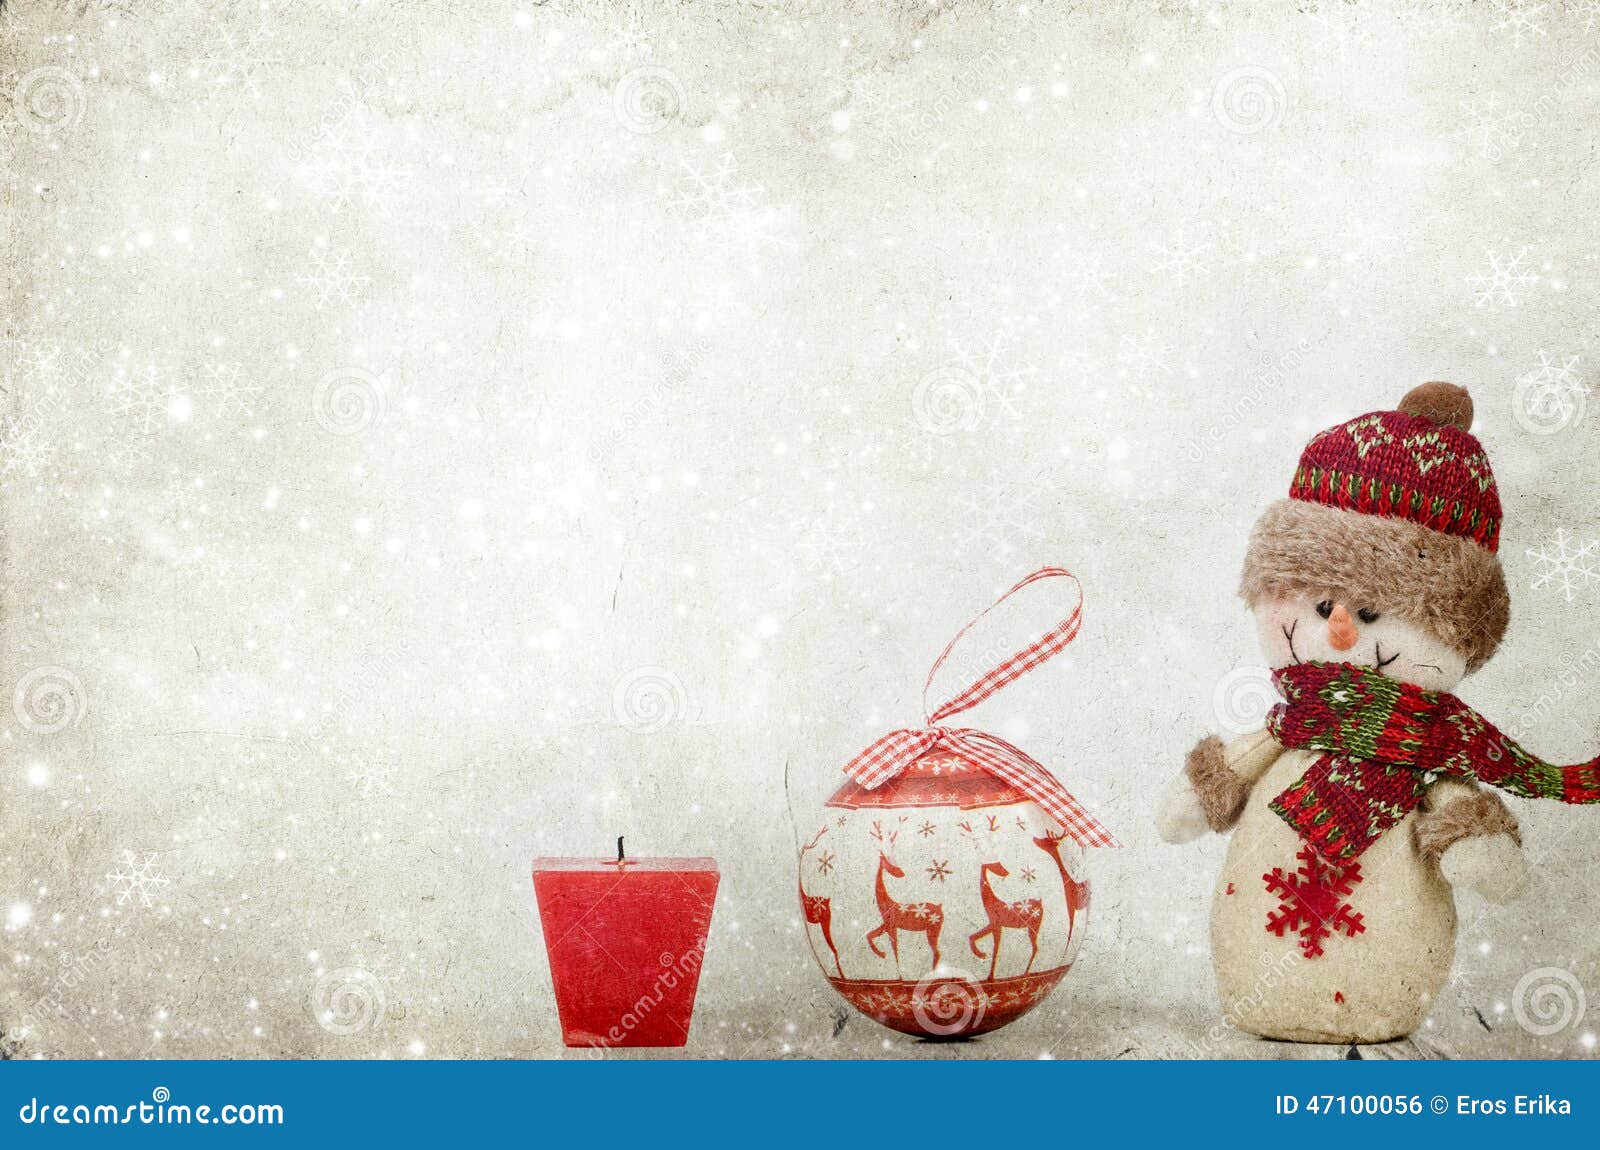 Julpynt med snögubben. Closeup på julpynt och snögubben